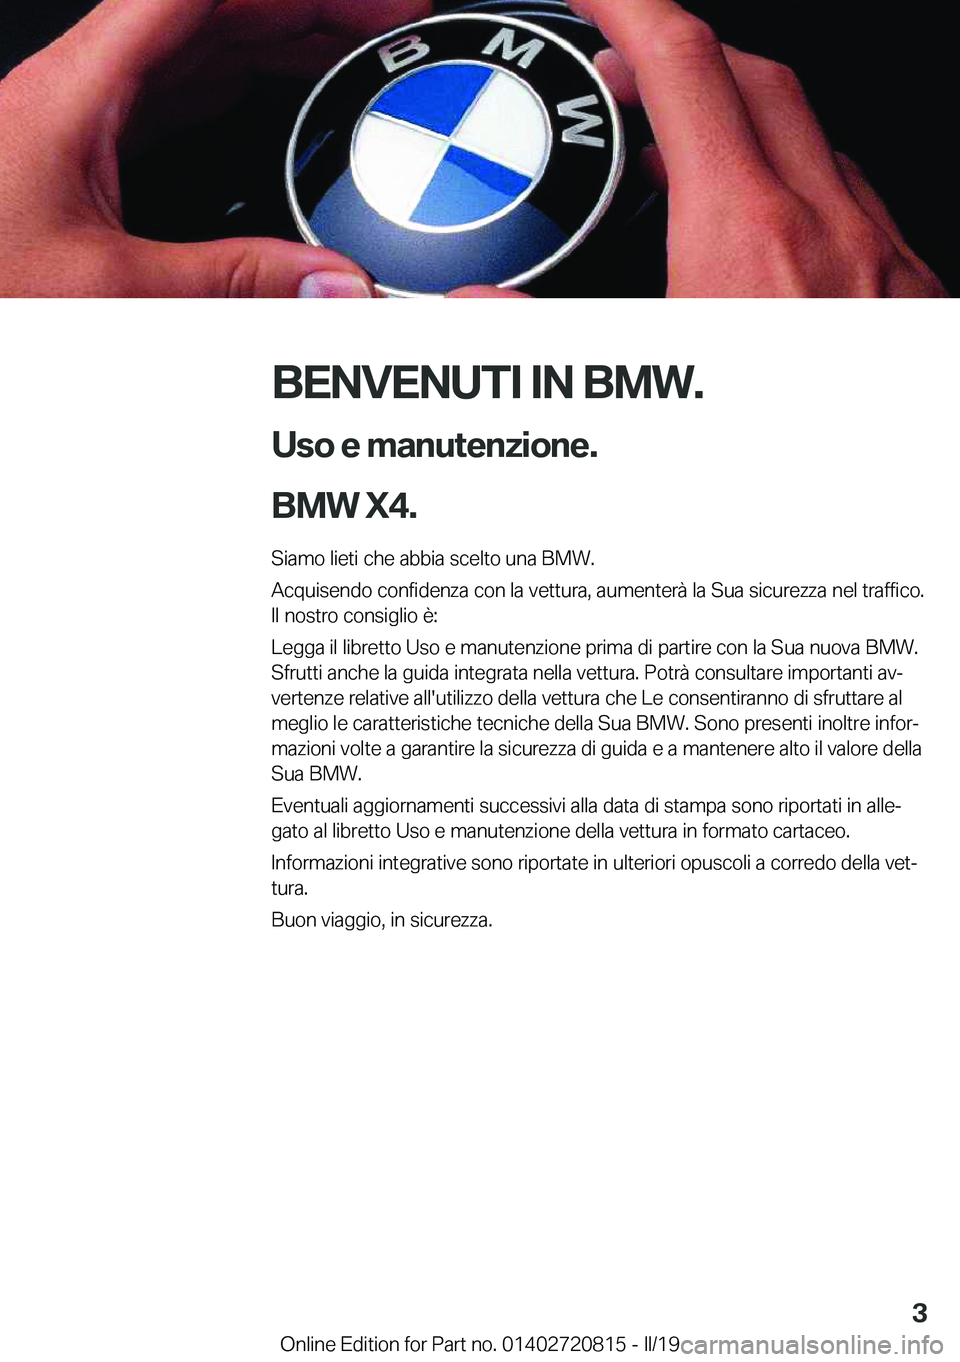 BMW X4 2019  Libretti Di Uso E manutenzione (in Italian) �B�E�N�V�E�N�U�T�I��I�N��B�M�W�.�U�s�o��e��m�a�n�u�t�e�n�z�i�o�n�e�.
�B�M�W��X�4�.
�S�i�a�m�o��l�i�e�t�i��c�h�e��a�b�b�i�a��s�c�e�l�t�o��u�n�a��B�M�W�.
�A�c�q�u�i�s�e�n�d�o��c�o�n�f�i�d�e�